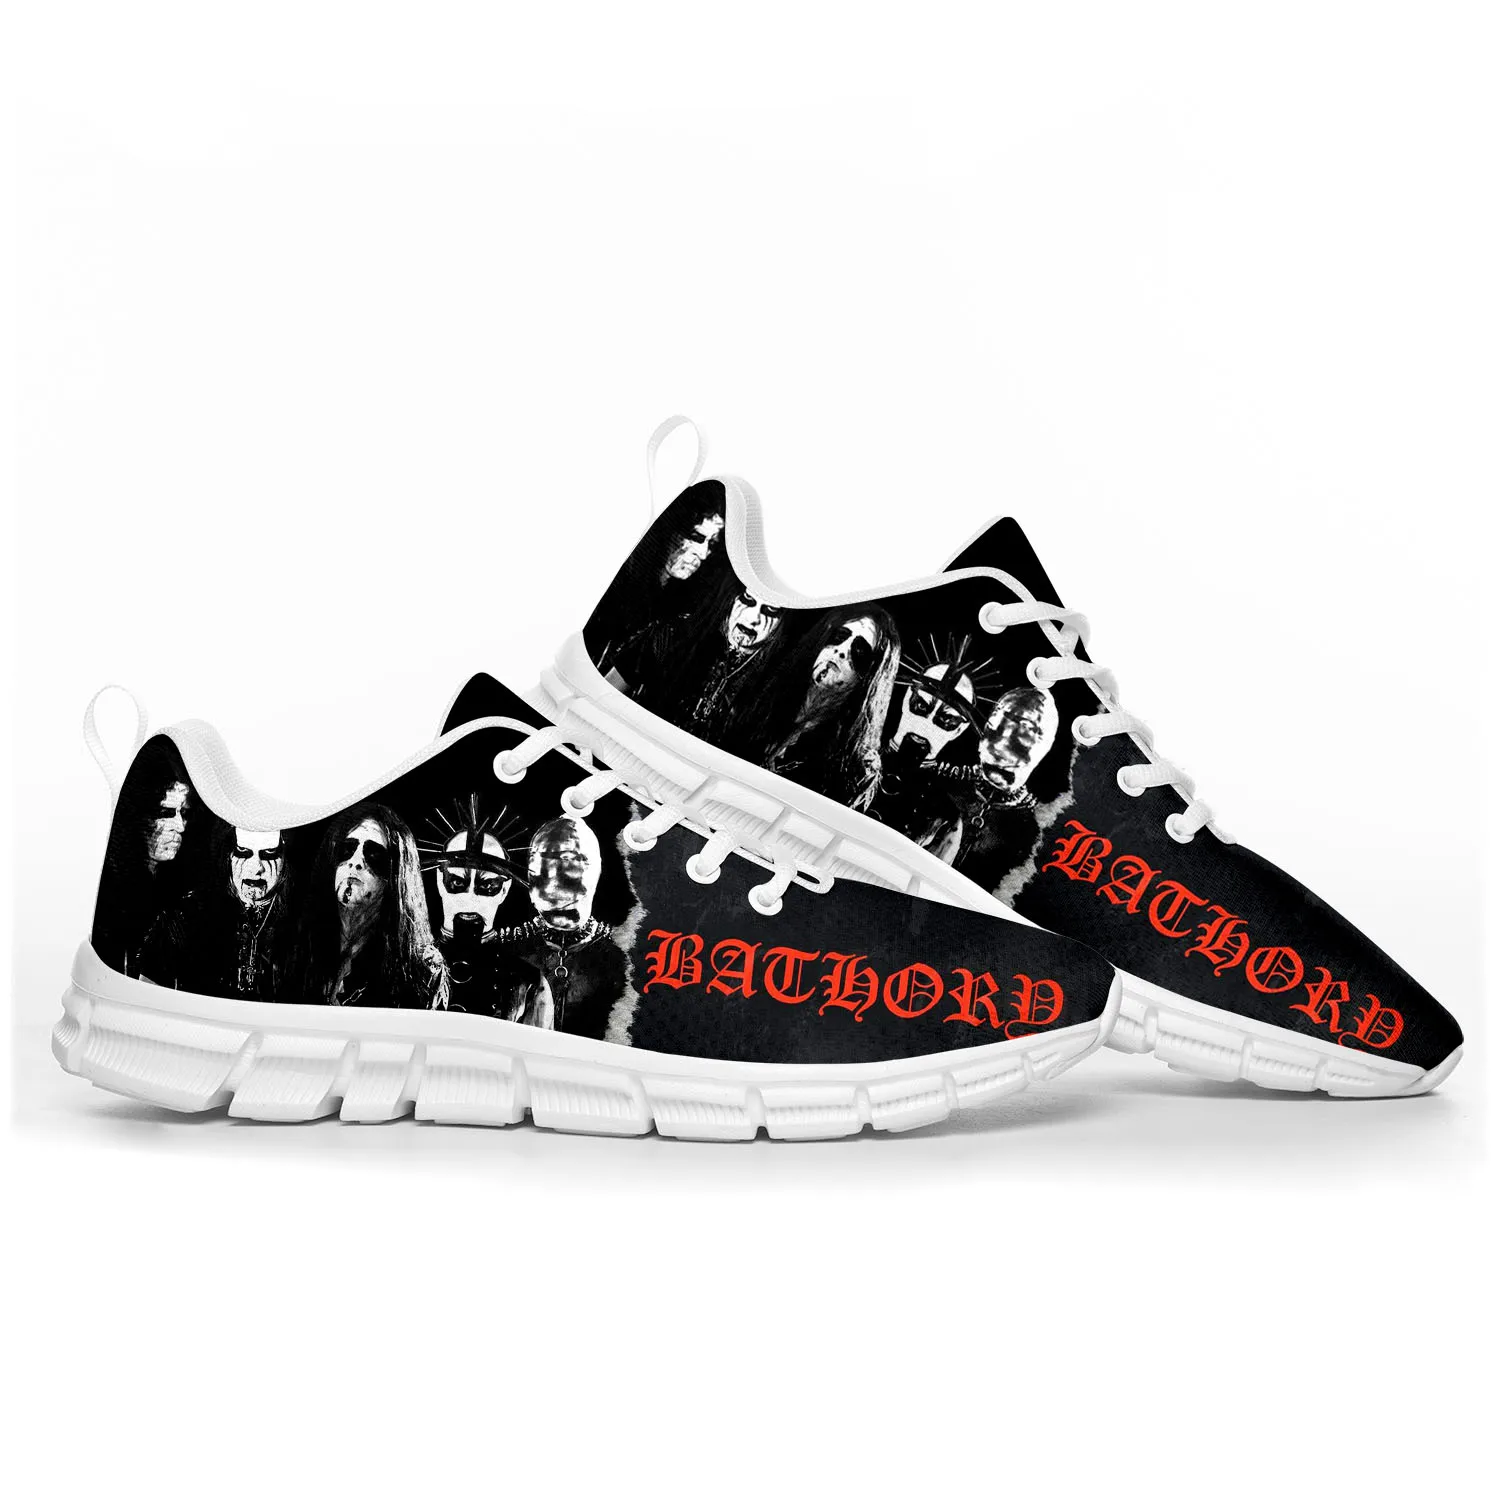 Спортивная обувь Bathory Rock Band, Высококачественные мужские, женские, подростковые, детские Кроссовки, черные Металлические Кроссовки, индивидуальная обувь для пары Изображение 1